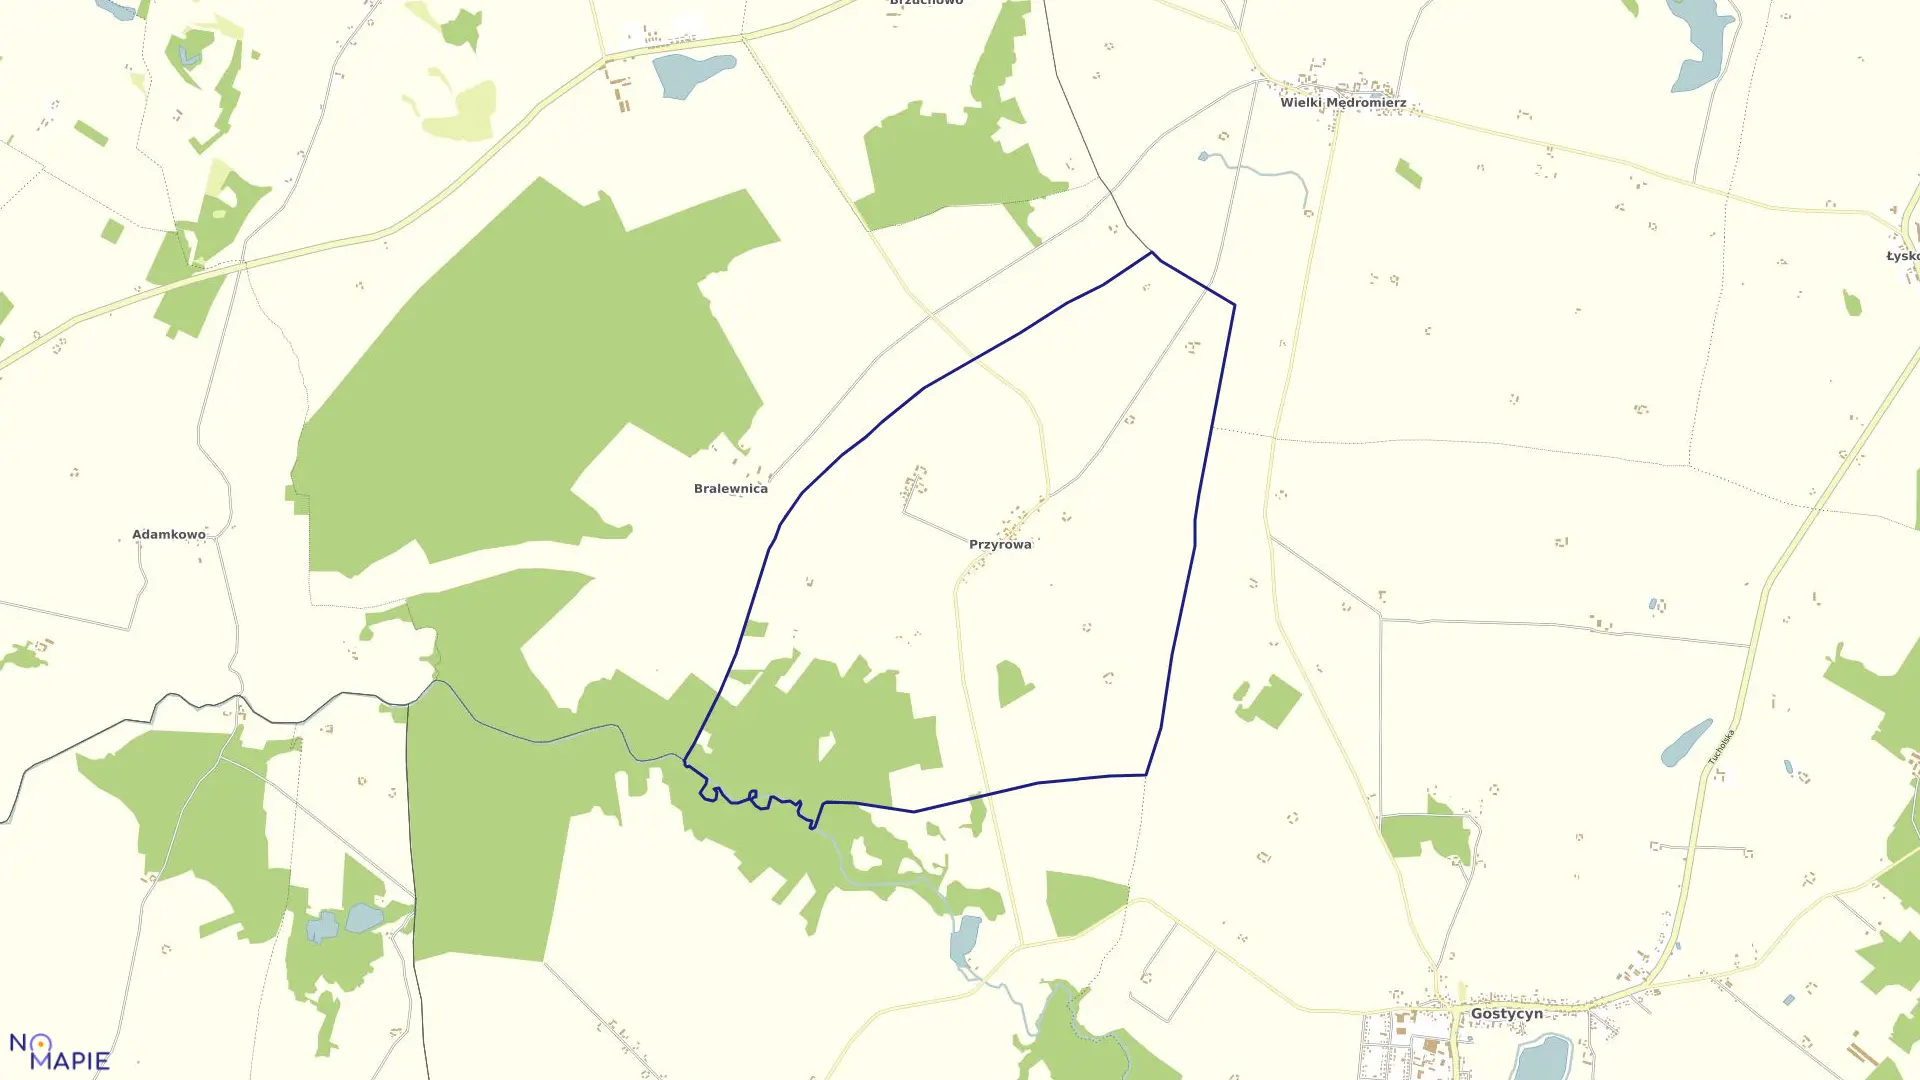 Mapa obrębu Przyrowa w gminie Gostycyn